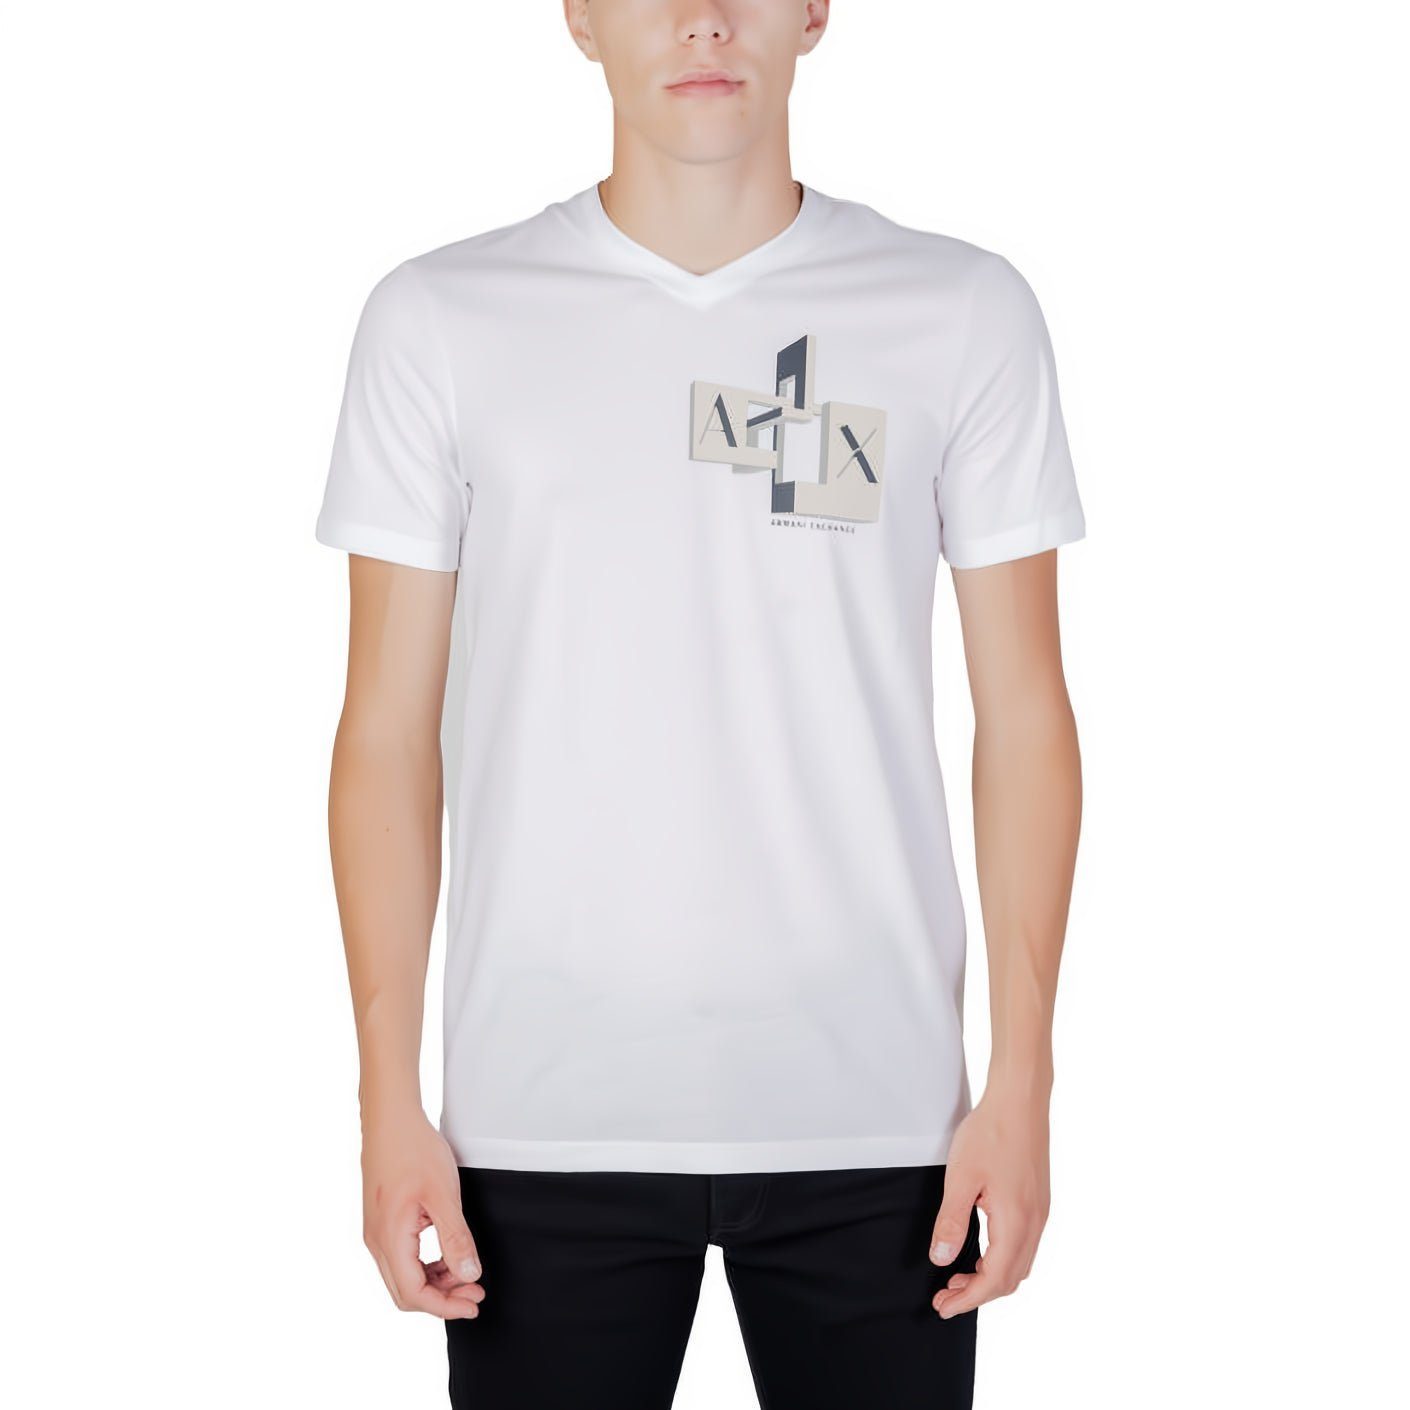 ARMANI EXCHANGE T-Shirt kurzarm, Rundhals, ein Must-Have für Ihre Kleidungskollektion!